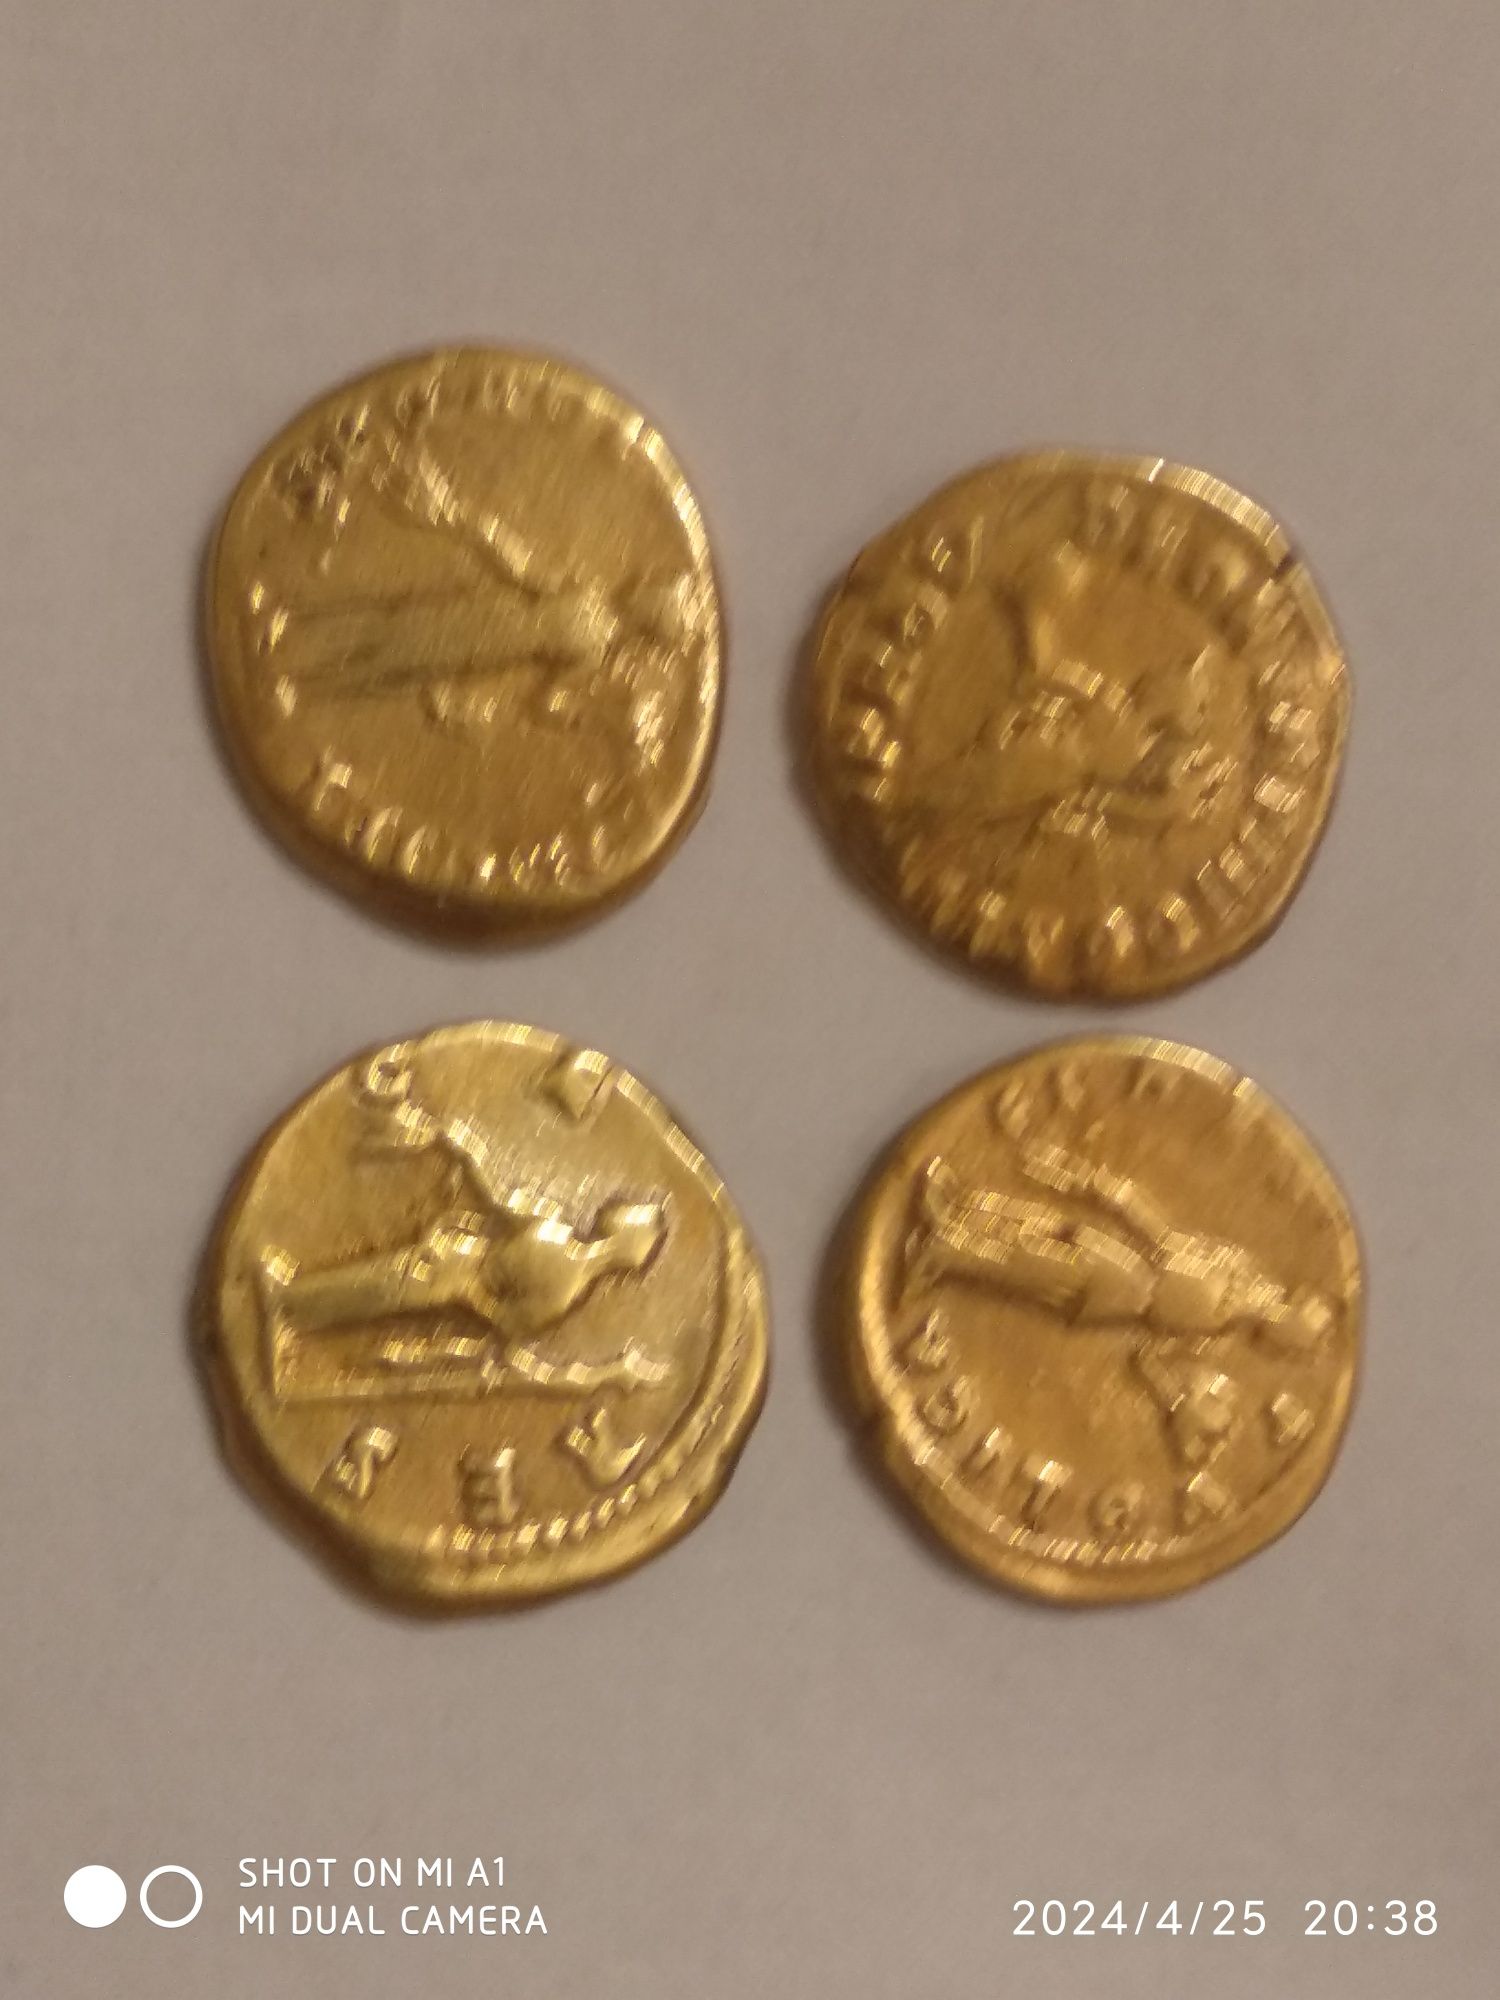 ZŁOTO rzymską monetą